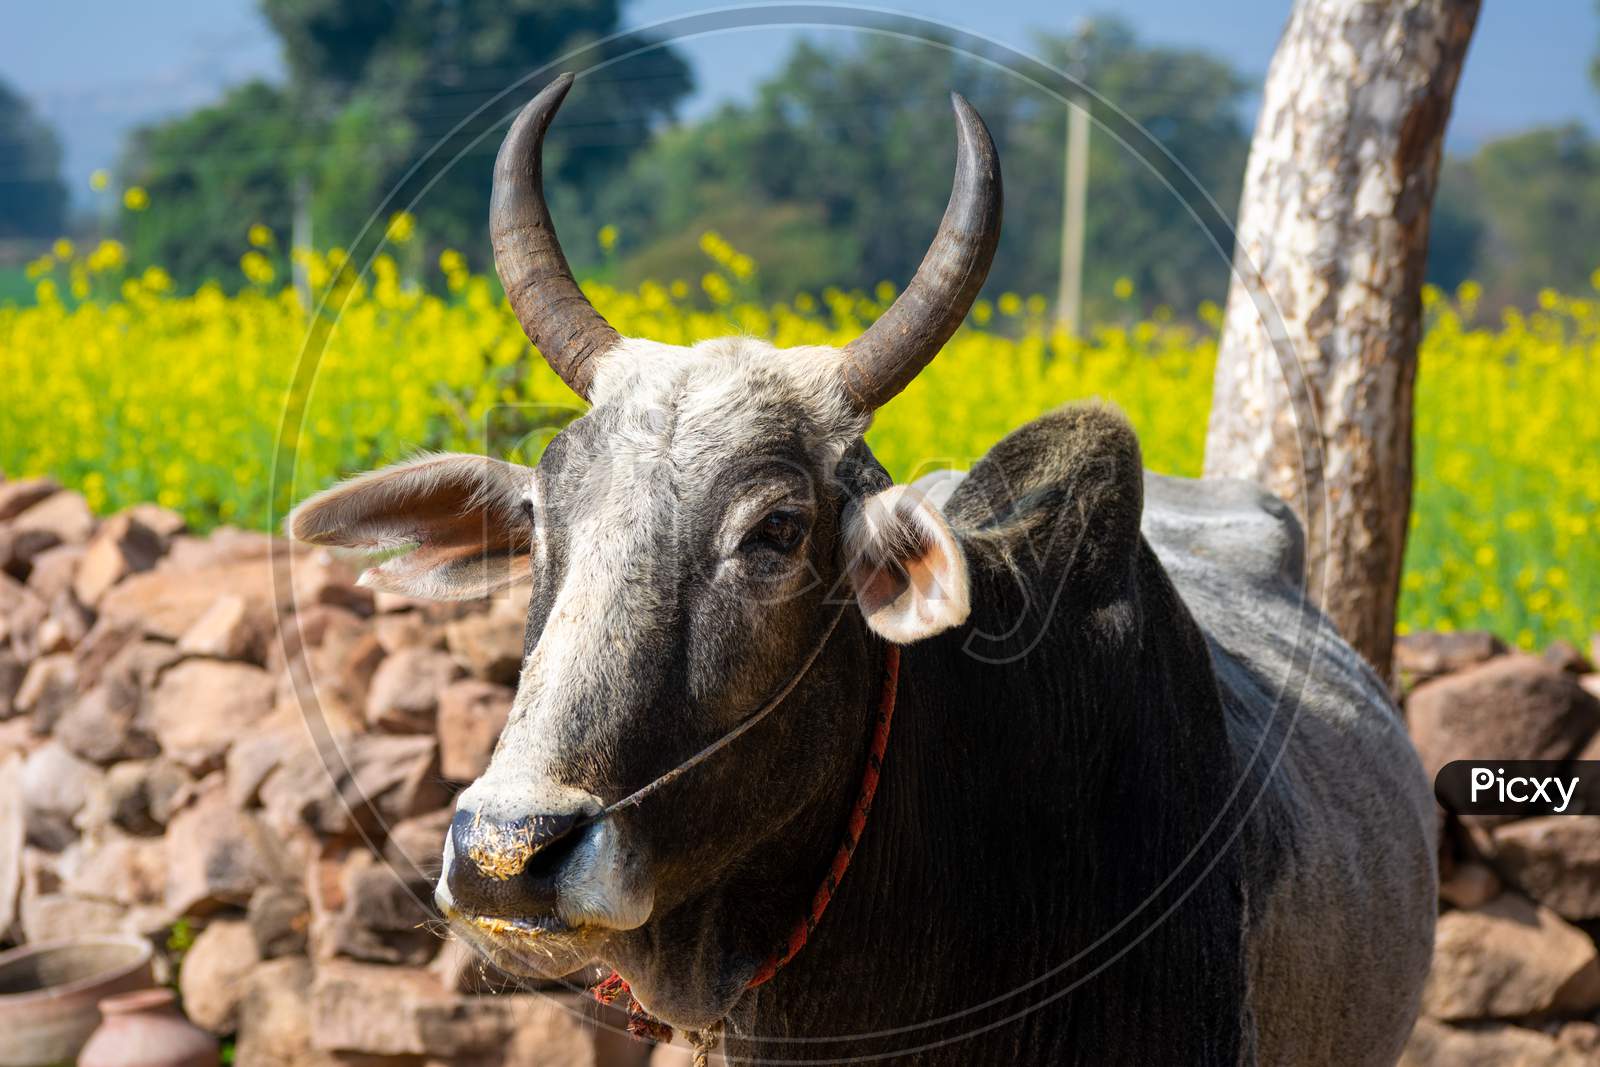 Indian ox on a farm